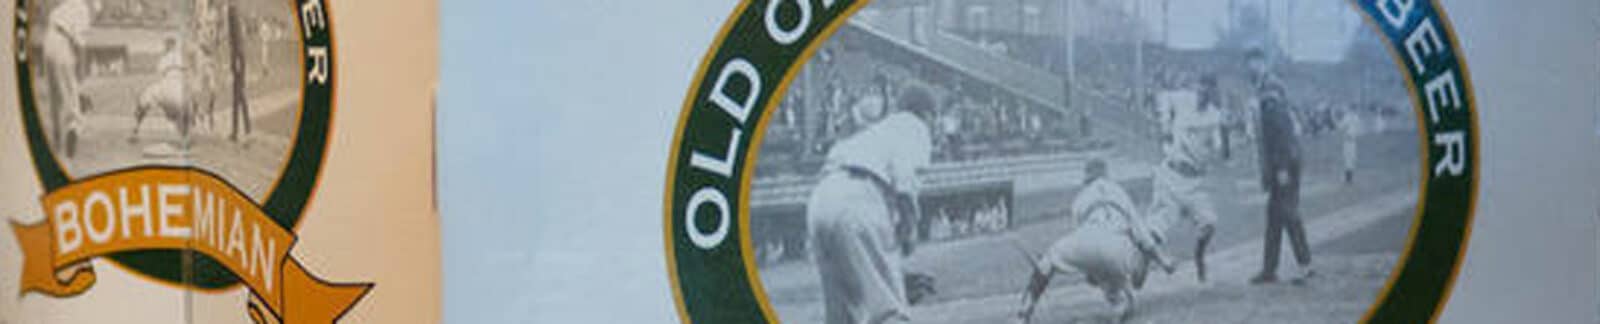 Old Oriole Park Beer header